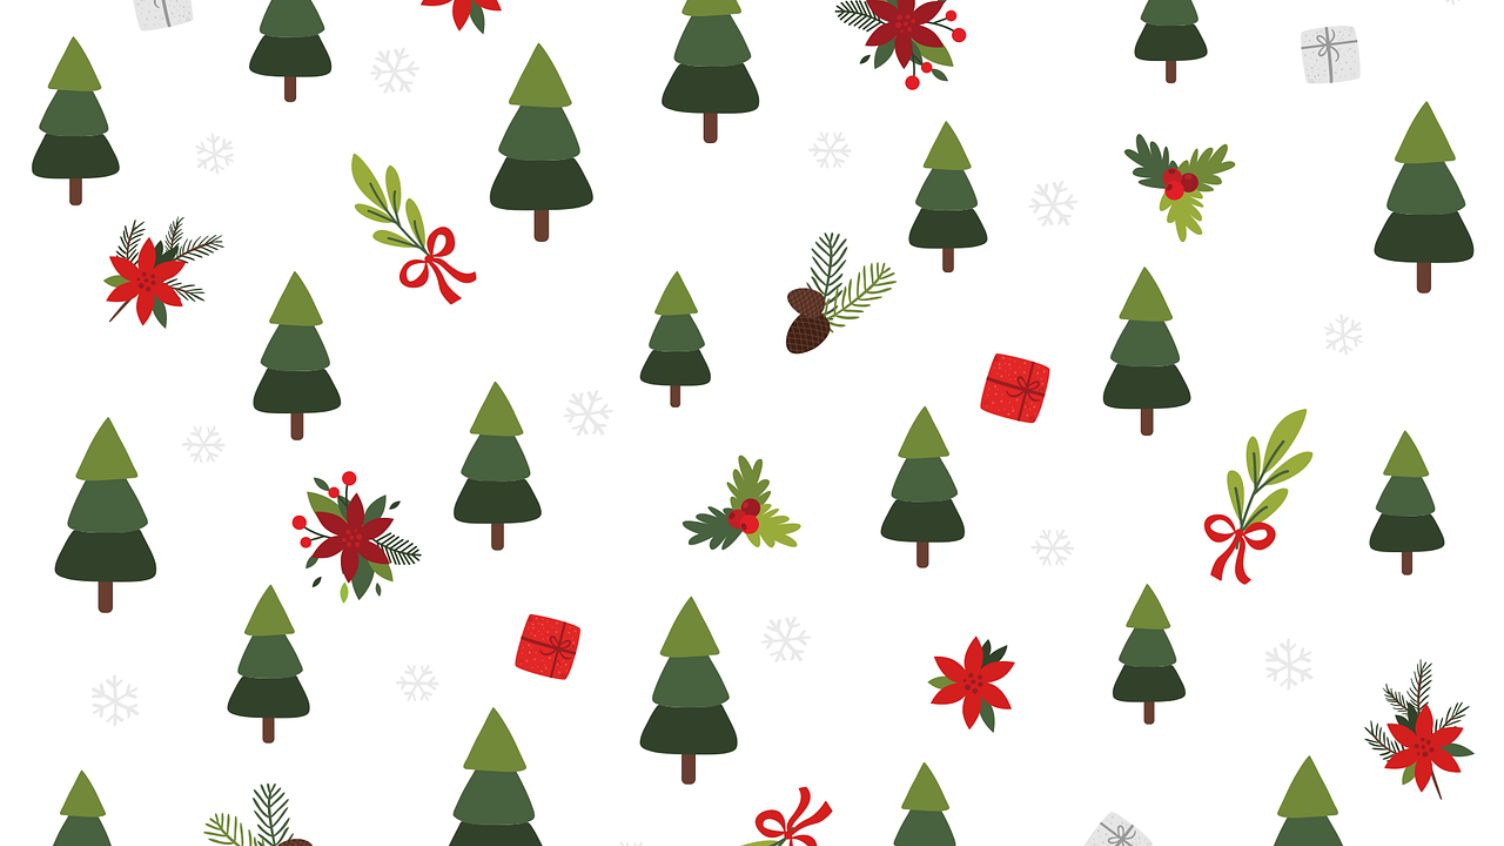 Để tạo sự mới mẻ và độc đáo cho cuộc họp Zoom của mình trong ngày Noel, bạn có thể chọn những hình nền Zoom Giáng sinh tốt nhất từ chúng tôi. Với 20 lựa chọn hấp dẫn nhất, bạn chắc chắn sẽ tìm được một bức hình ưng ý để trang trí phòng họp Zoom của mình.